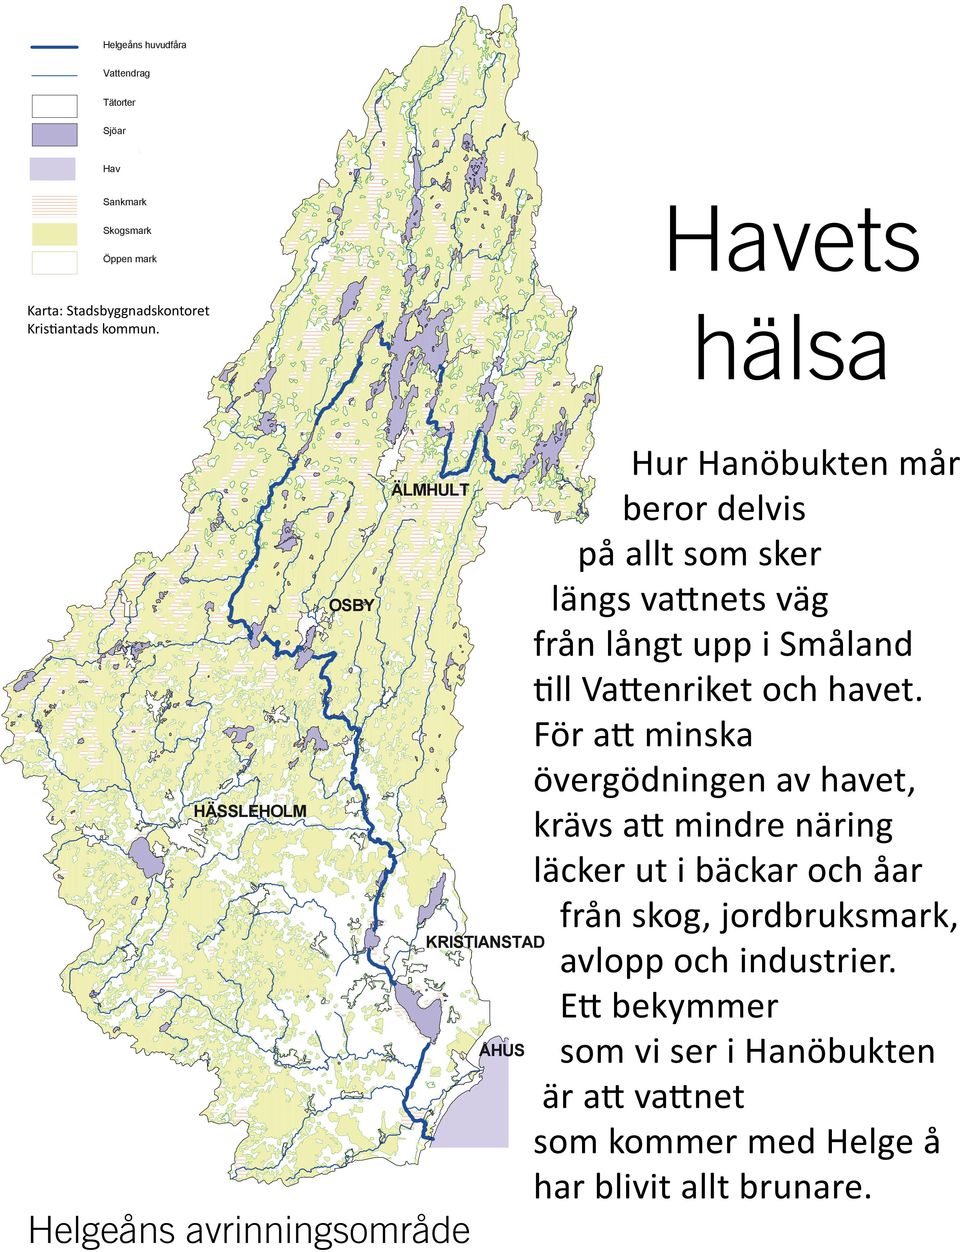 ÄLMHULT Skogsmark Öppen mark OSBY Hur Hanöbukten mår ÄLMHULT beror delvis på allt som sker längs vattnets väg OSBY från långt upp i Småland till Vattenriket och